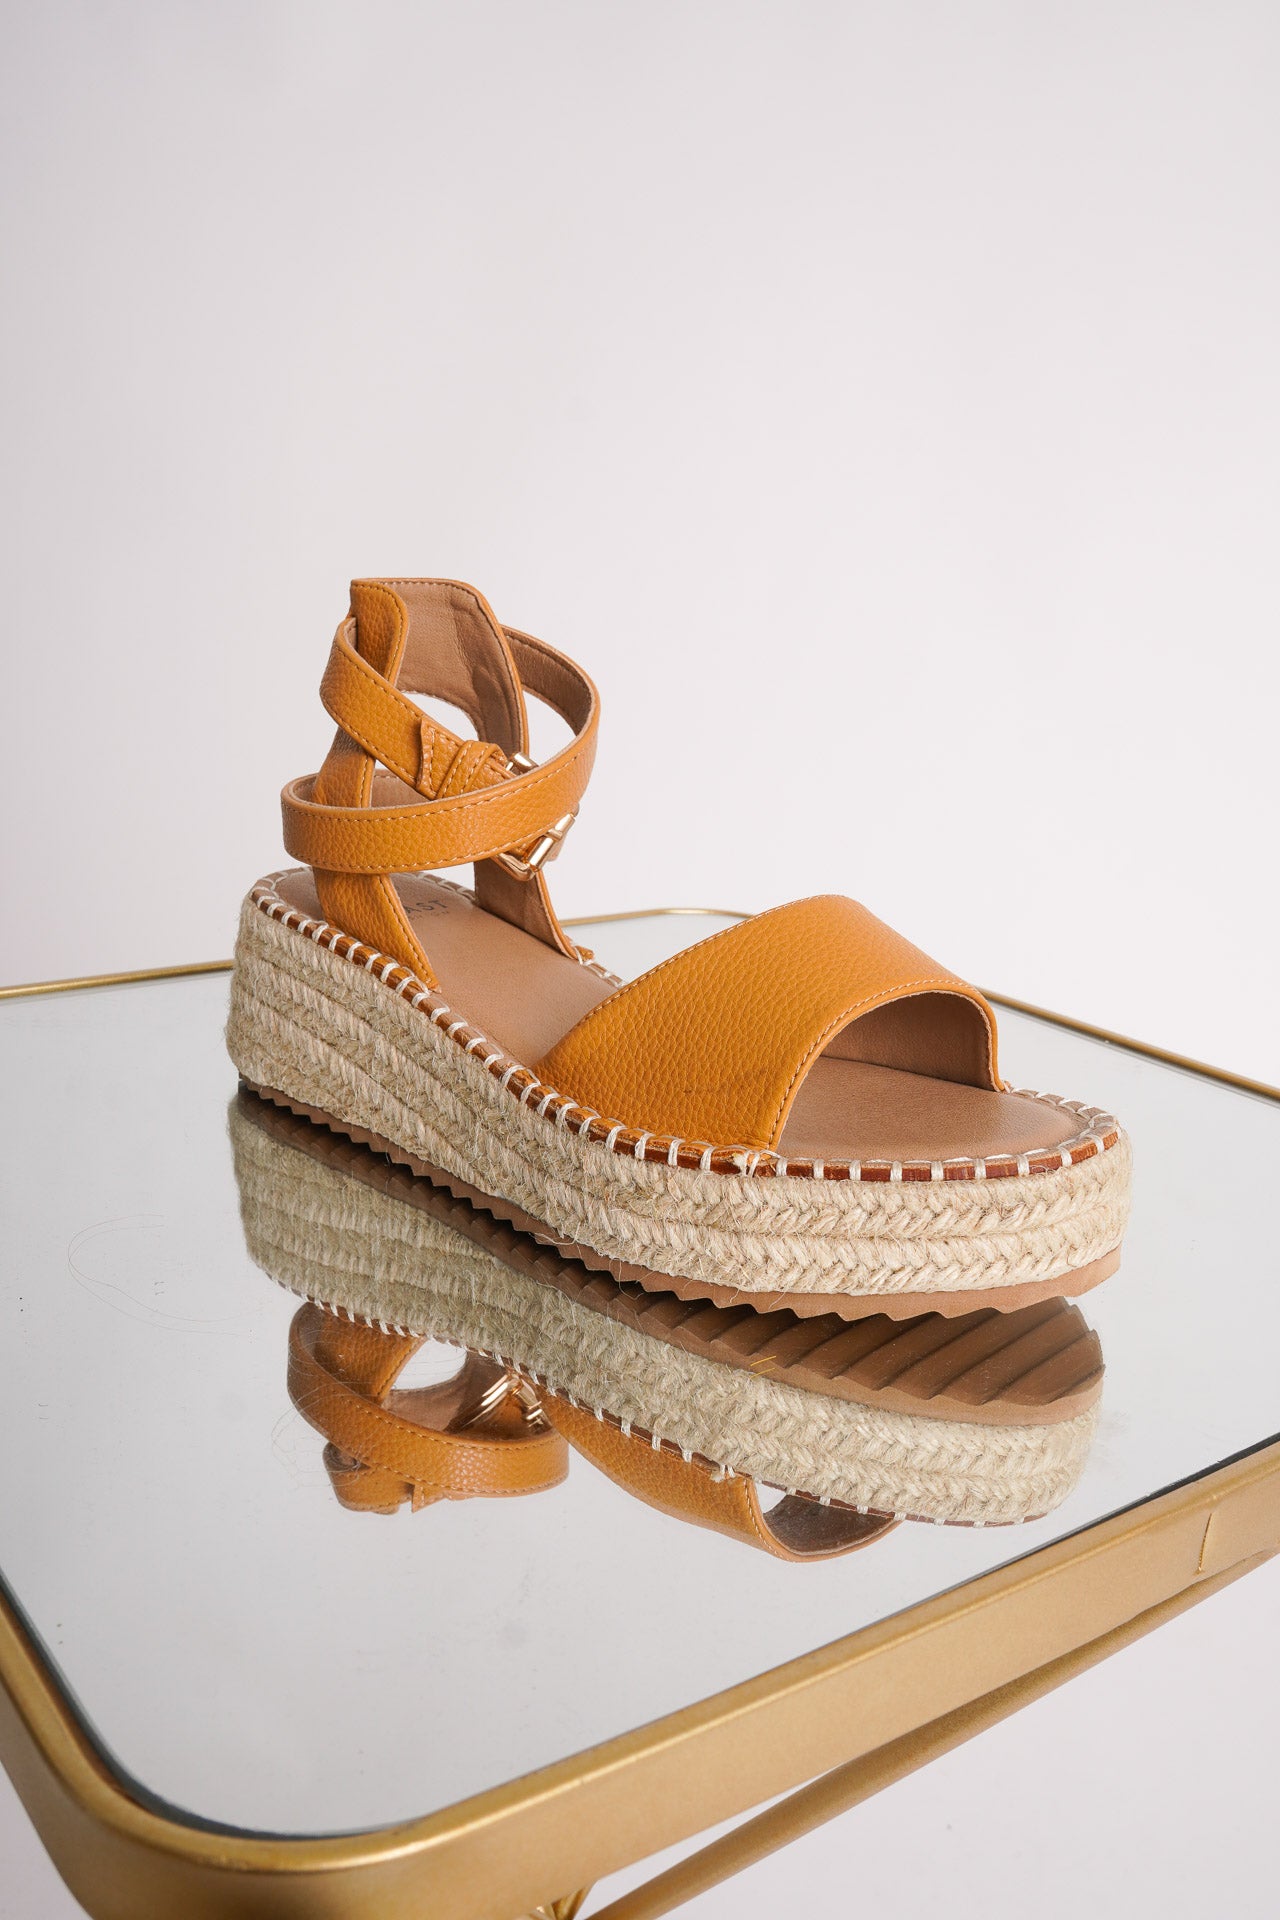 Share 115+ 2 inch espadrille wedge sandals best